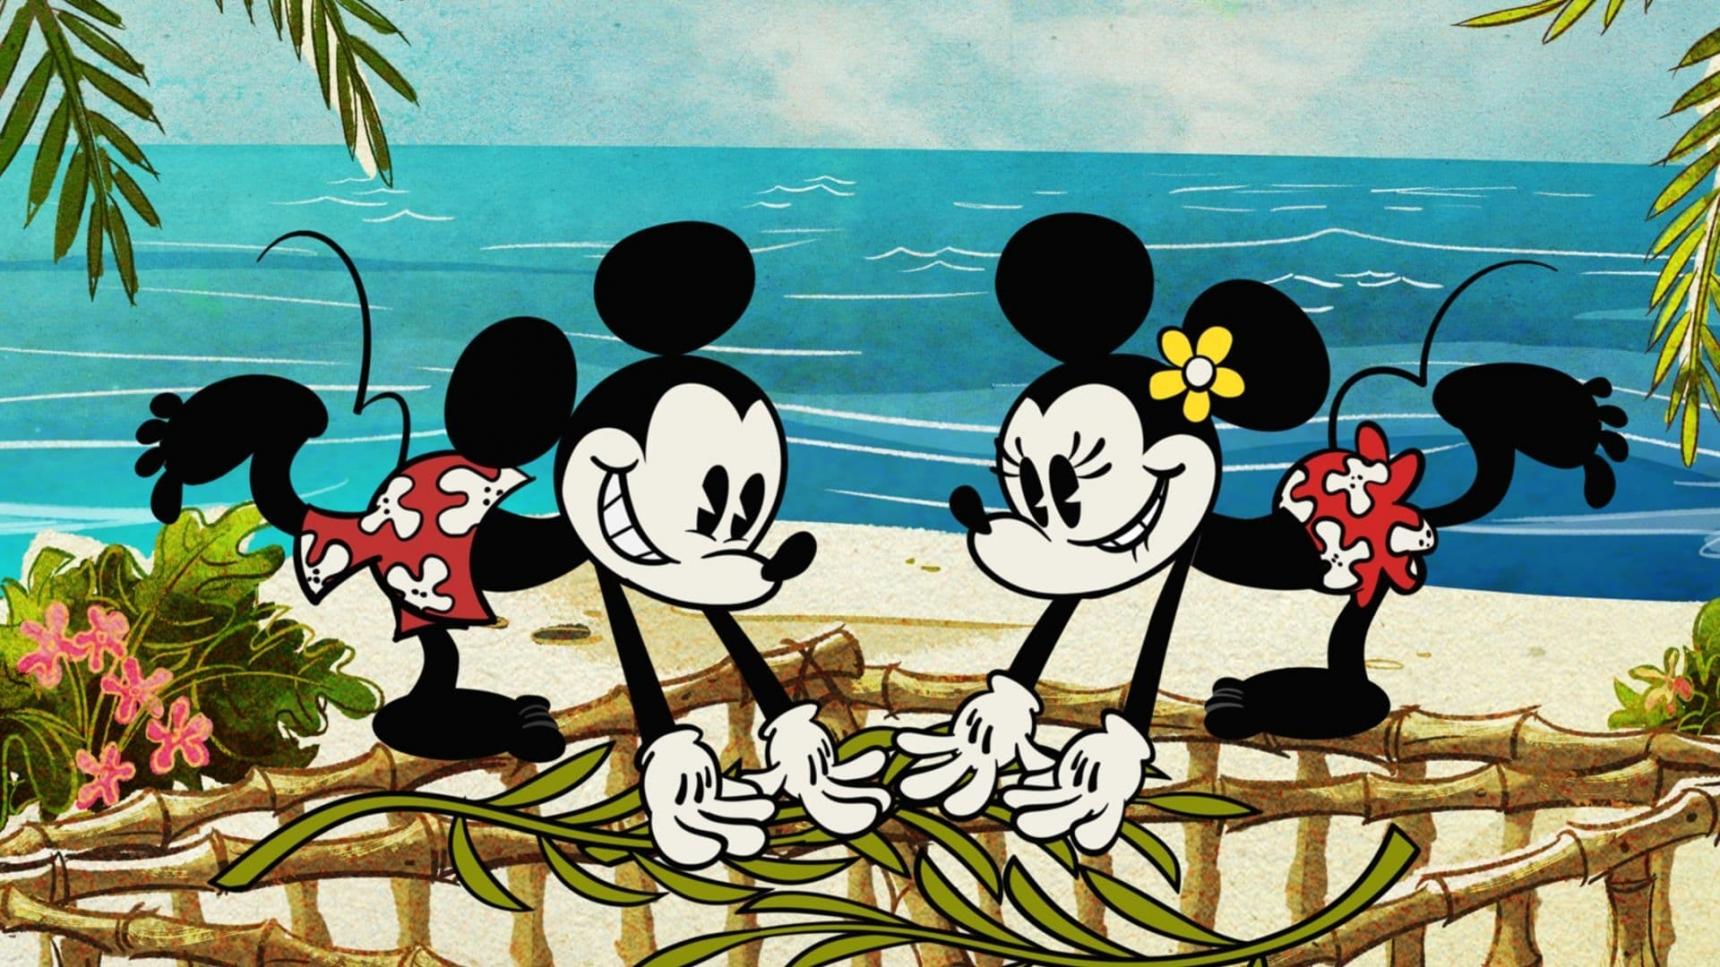 Poster del episodio 12 de El maravilloso mundo de Mickey Mouse online